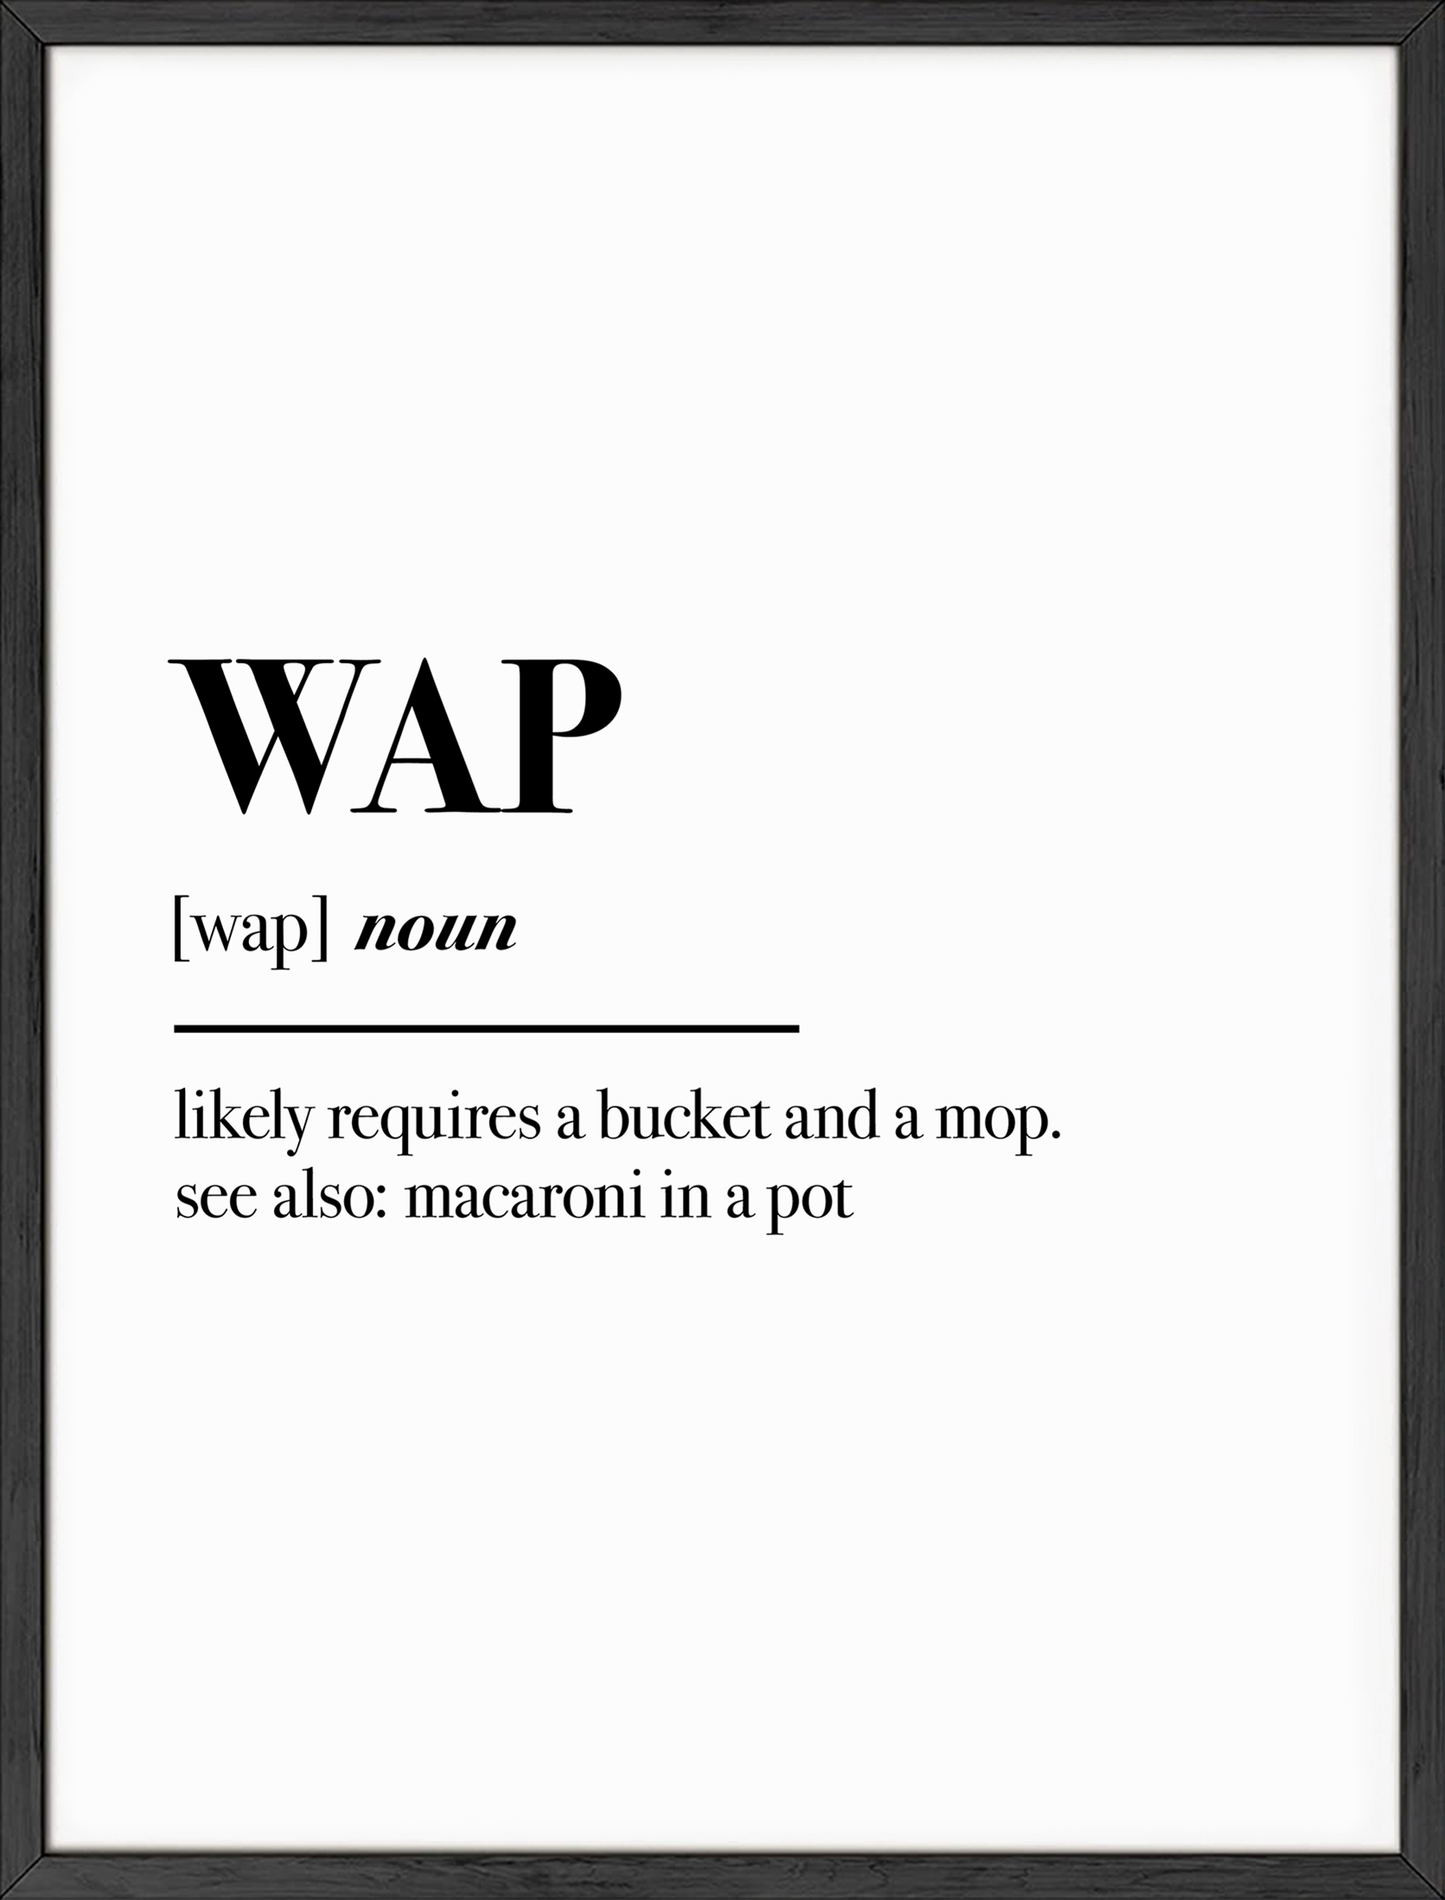 WAP Definition